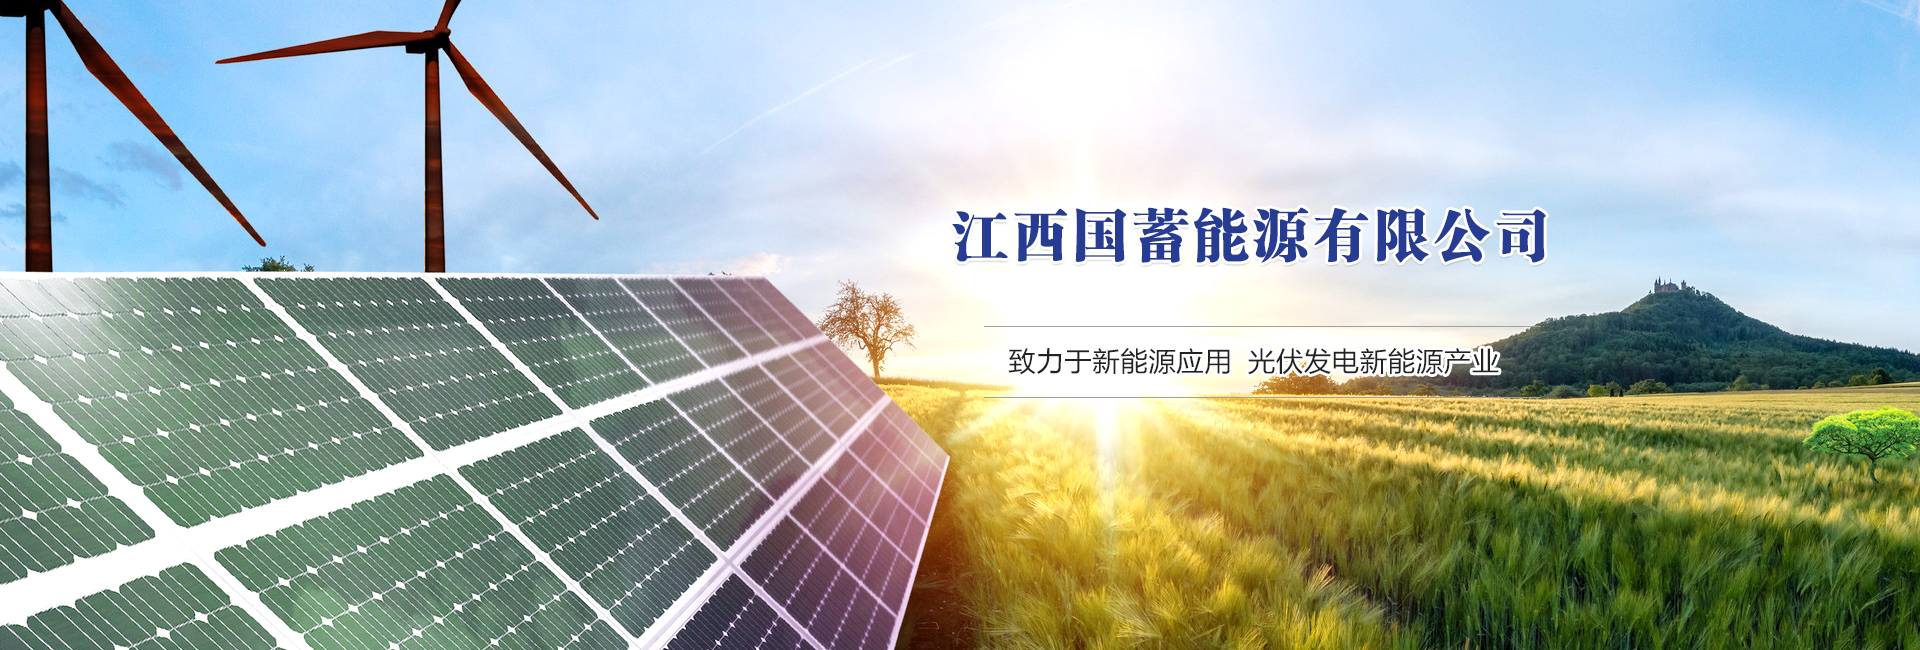 热烈庆祝“江西国蓄能源有限公司”官网正式上线